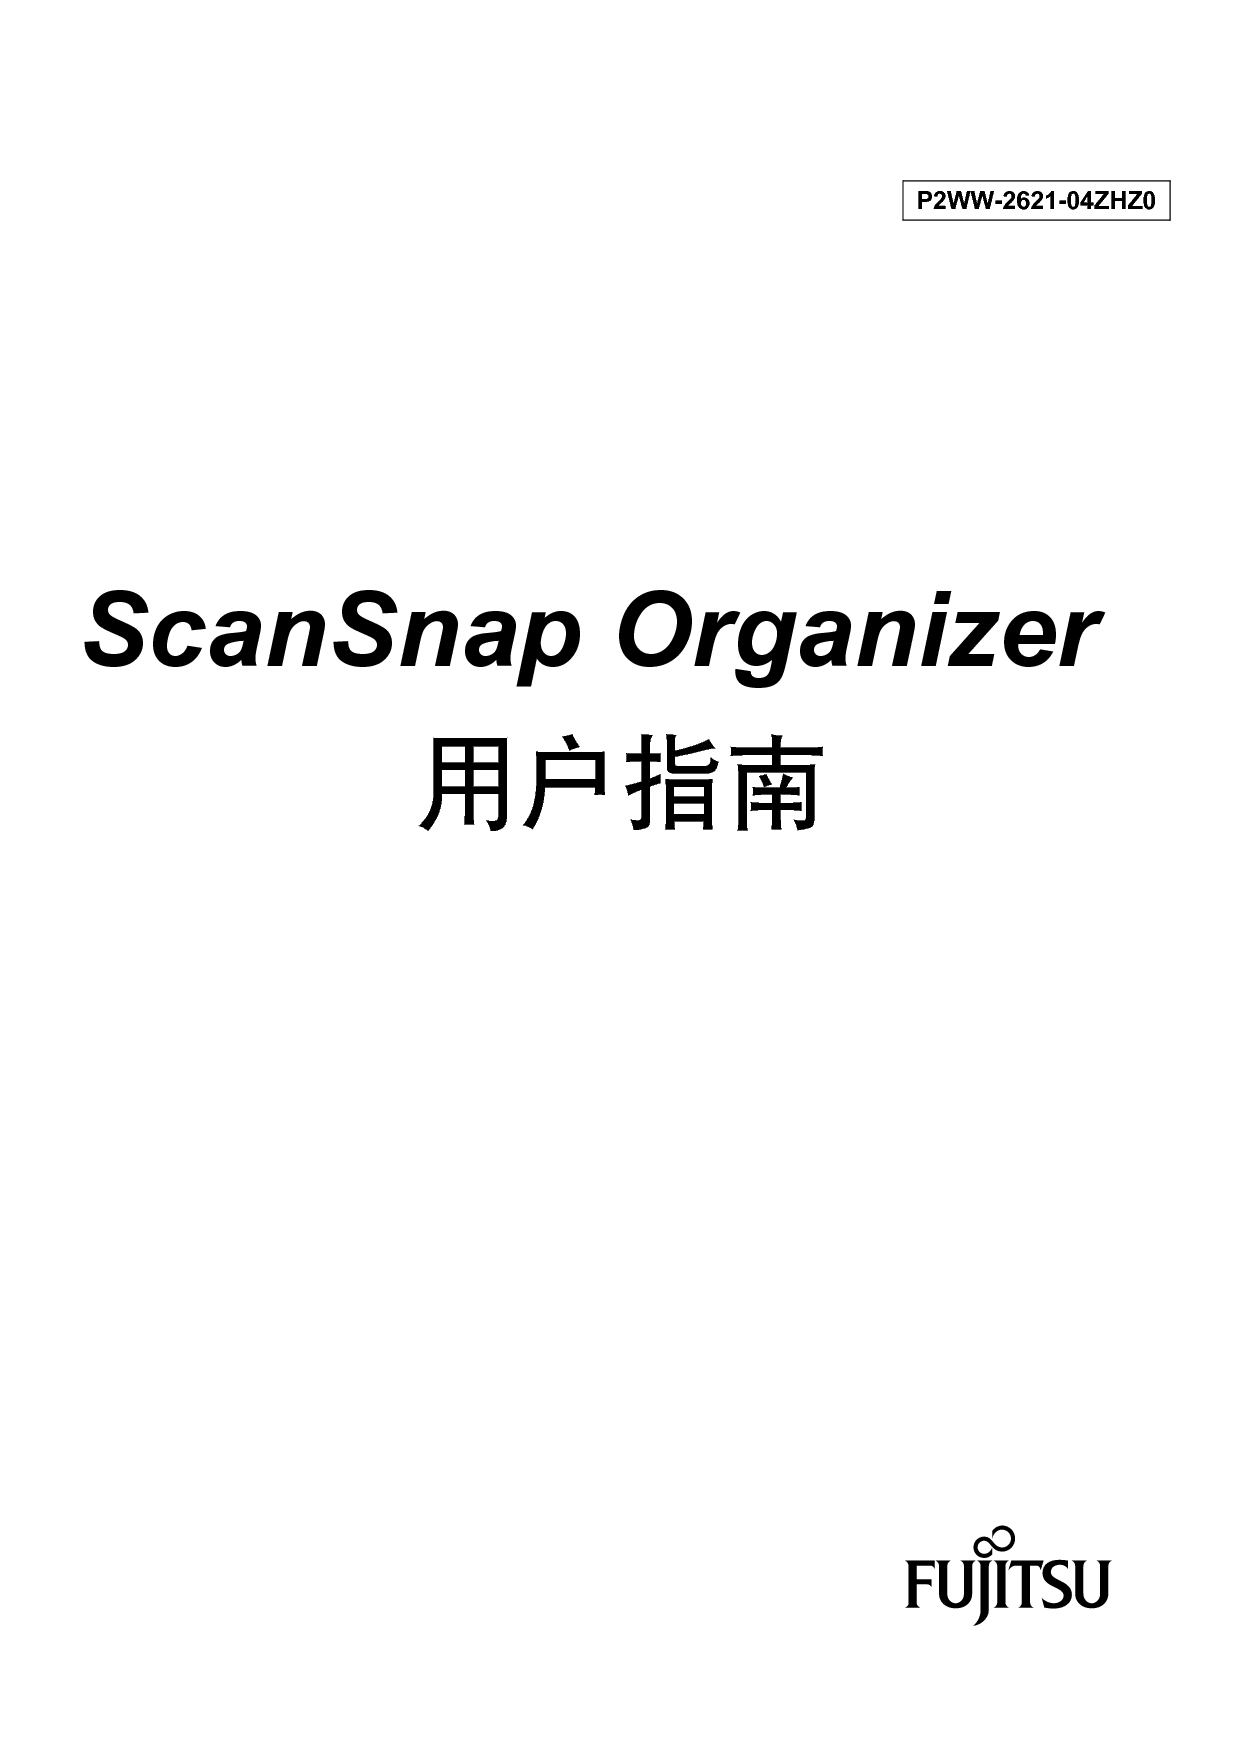 富士通 Fujitsu ScanSnap Organizer 2012年1月 用户指南 封面